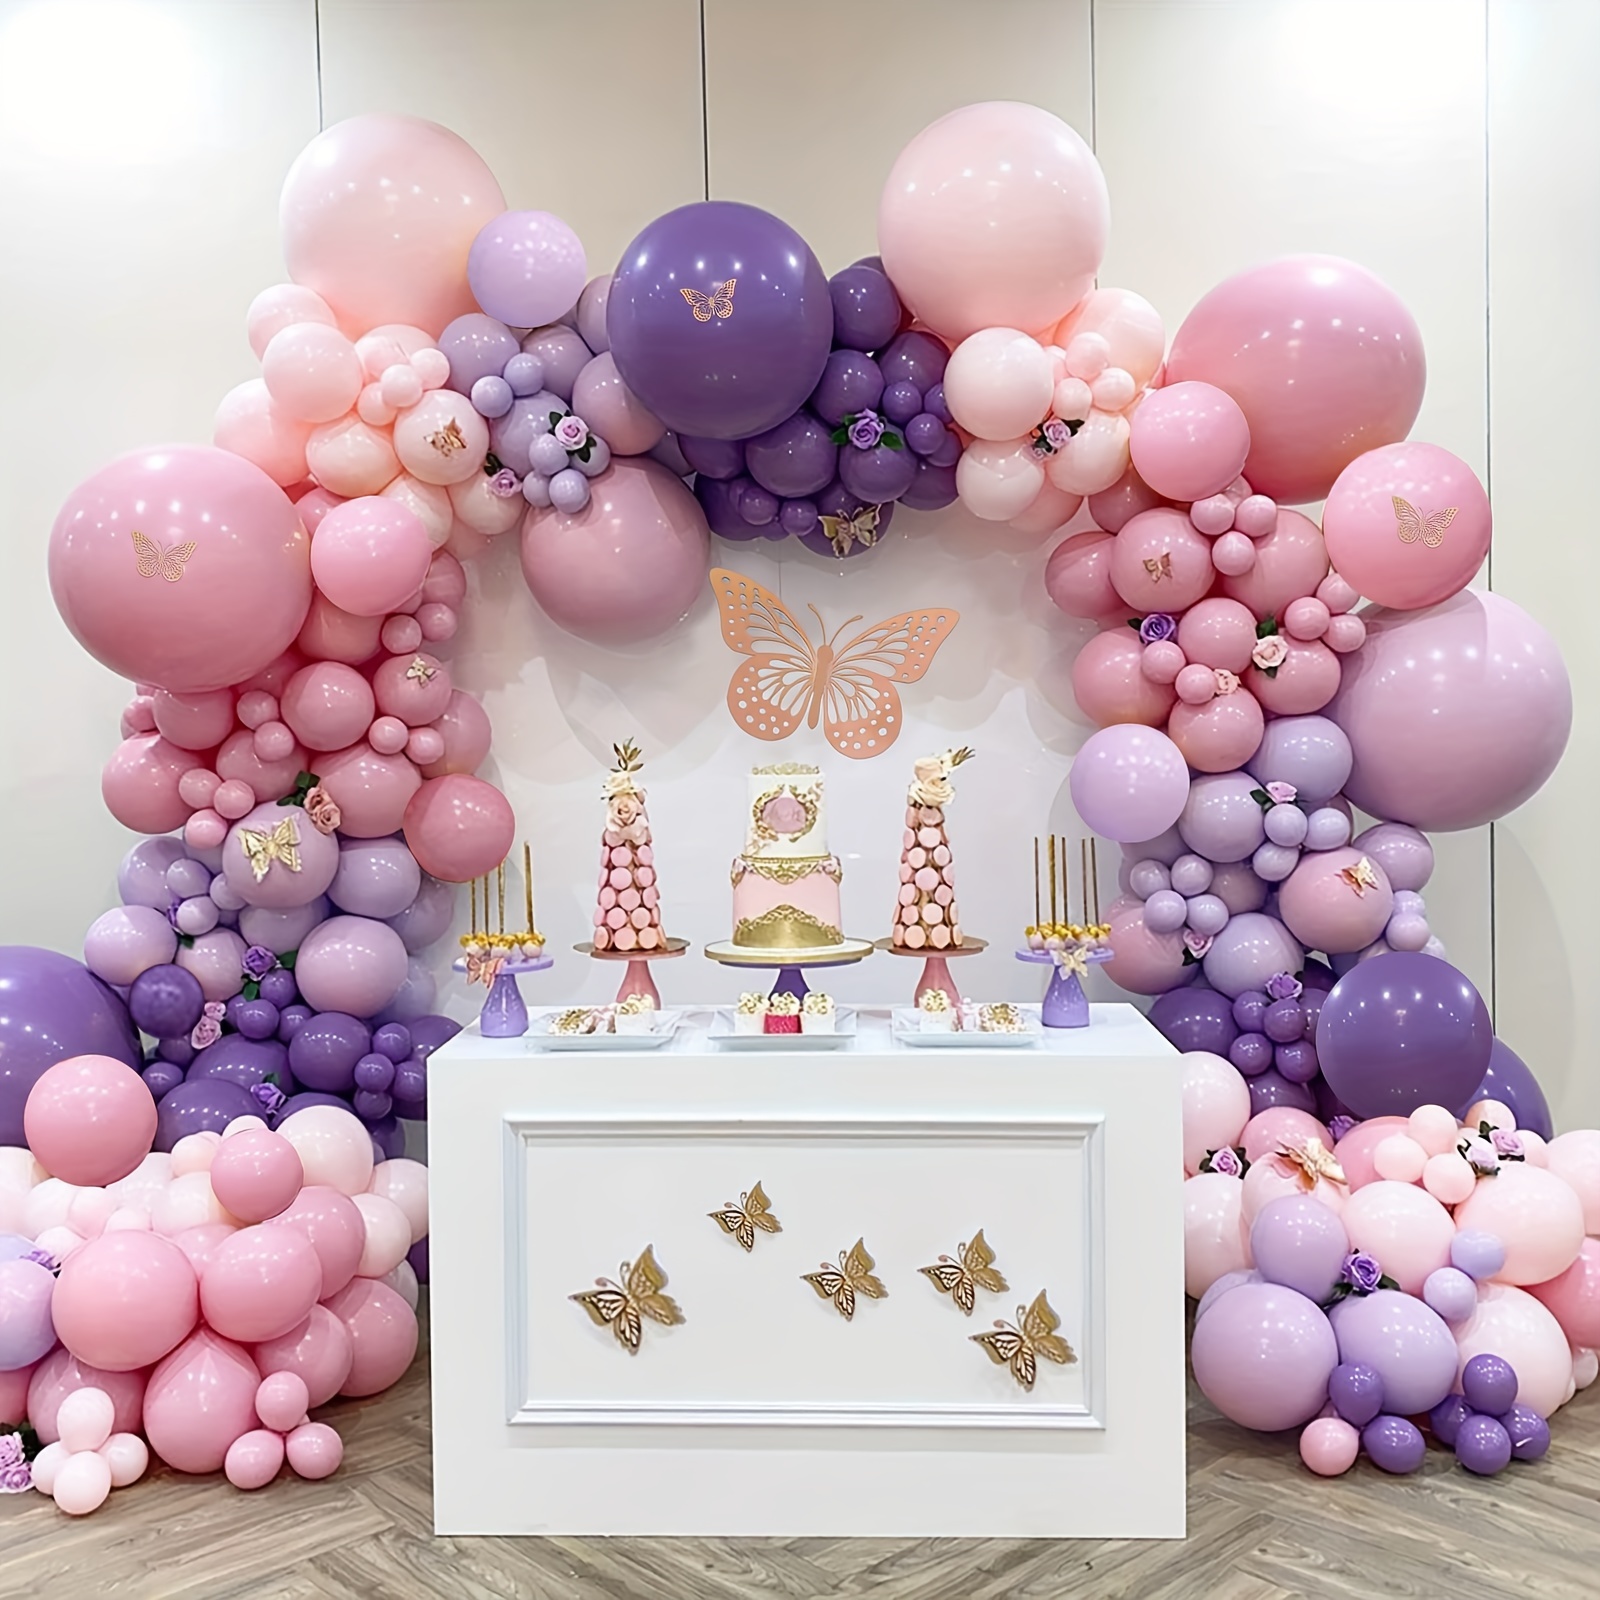 Decoraciones de cajas de baby shower de mariposa morada, 4 cajas de globos  morados con letra de bebé, letras impresas, decoración de centro de mesa de